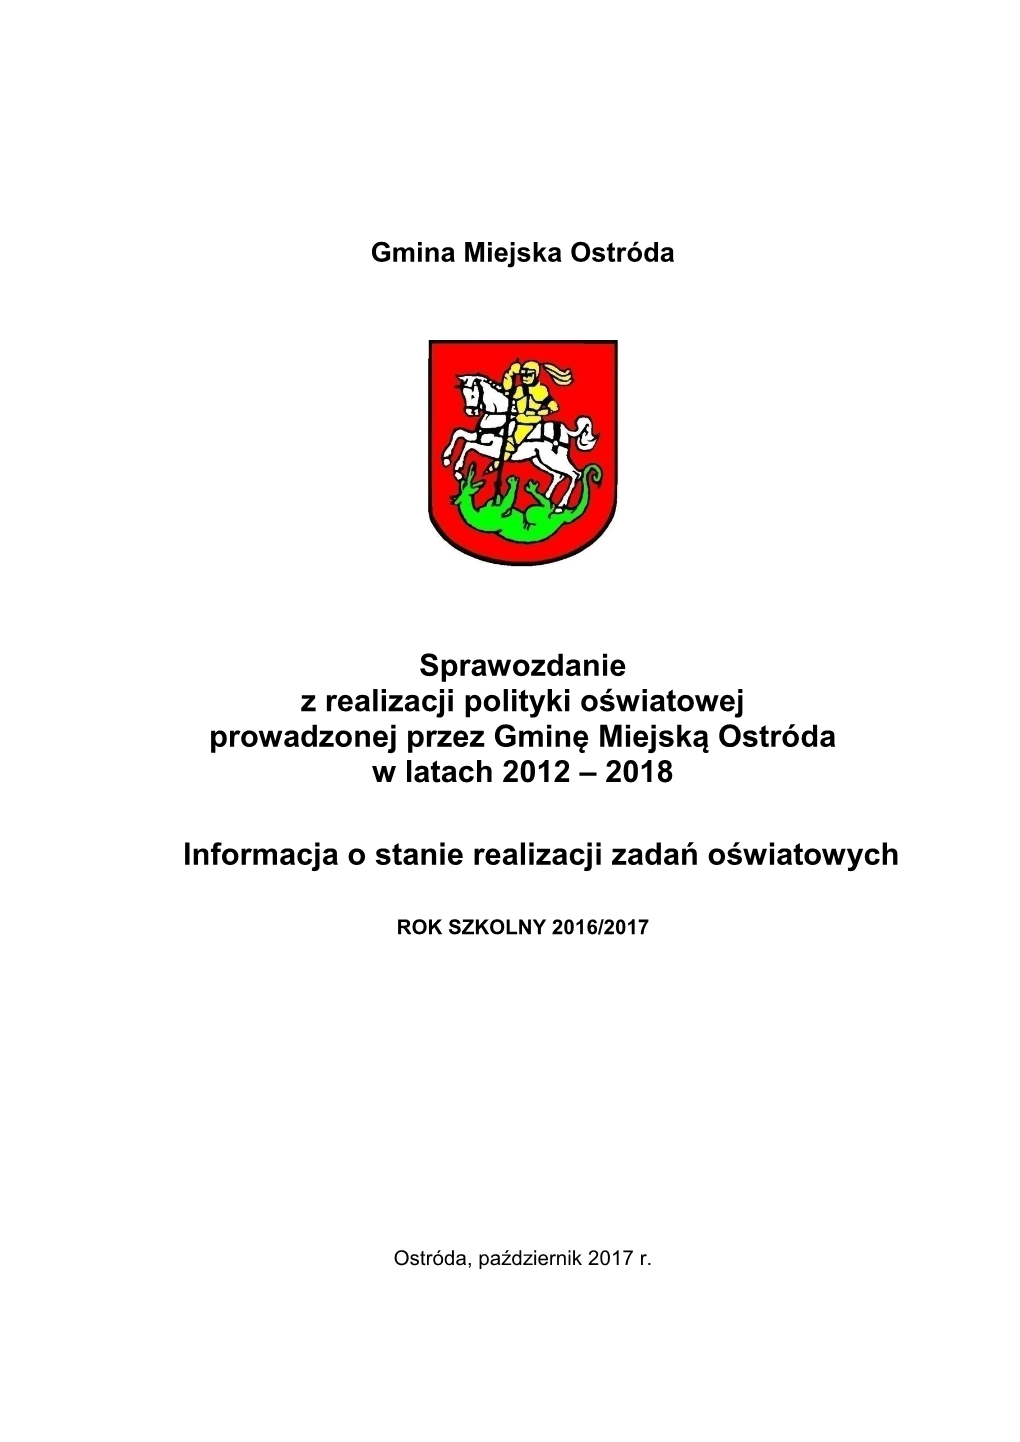 Sprawozdanie Z Realizacji Polityki Oświatowej Prowadzonej Przez Gminę Miejską Ostróda W Latach 2012 – 2018